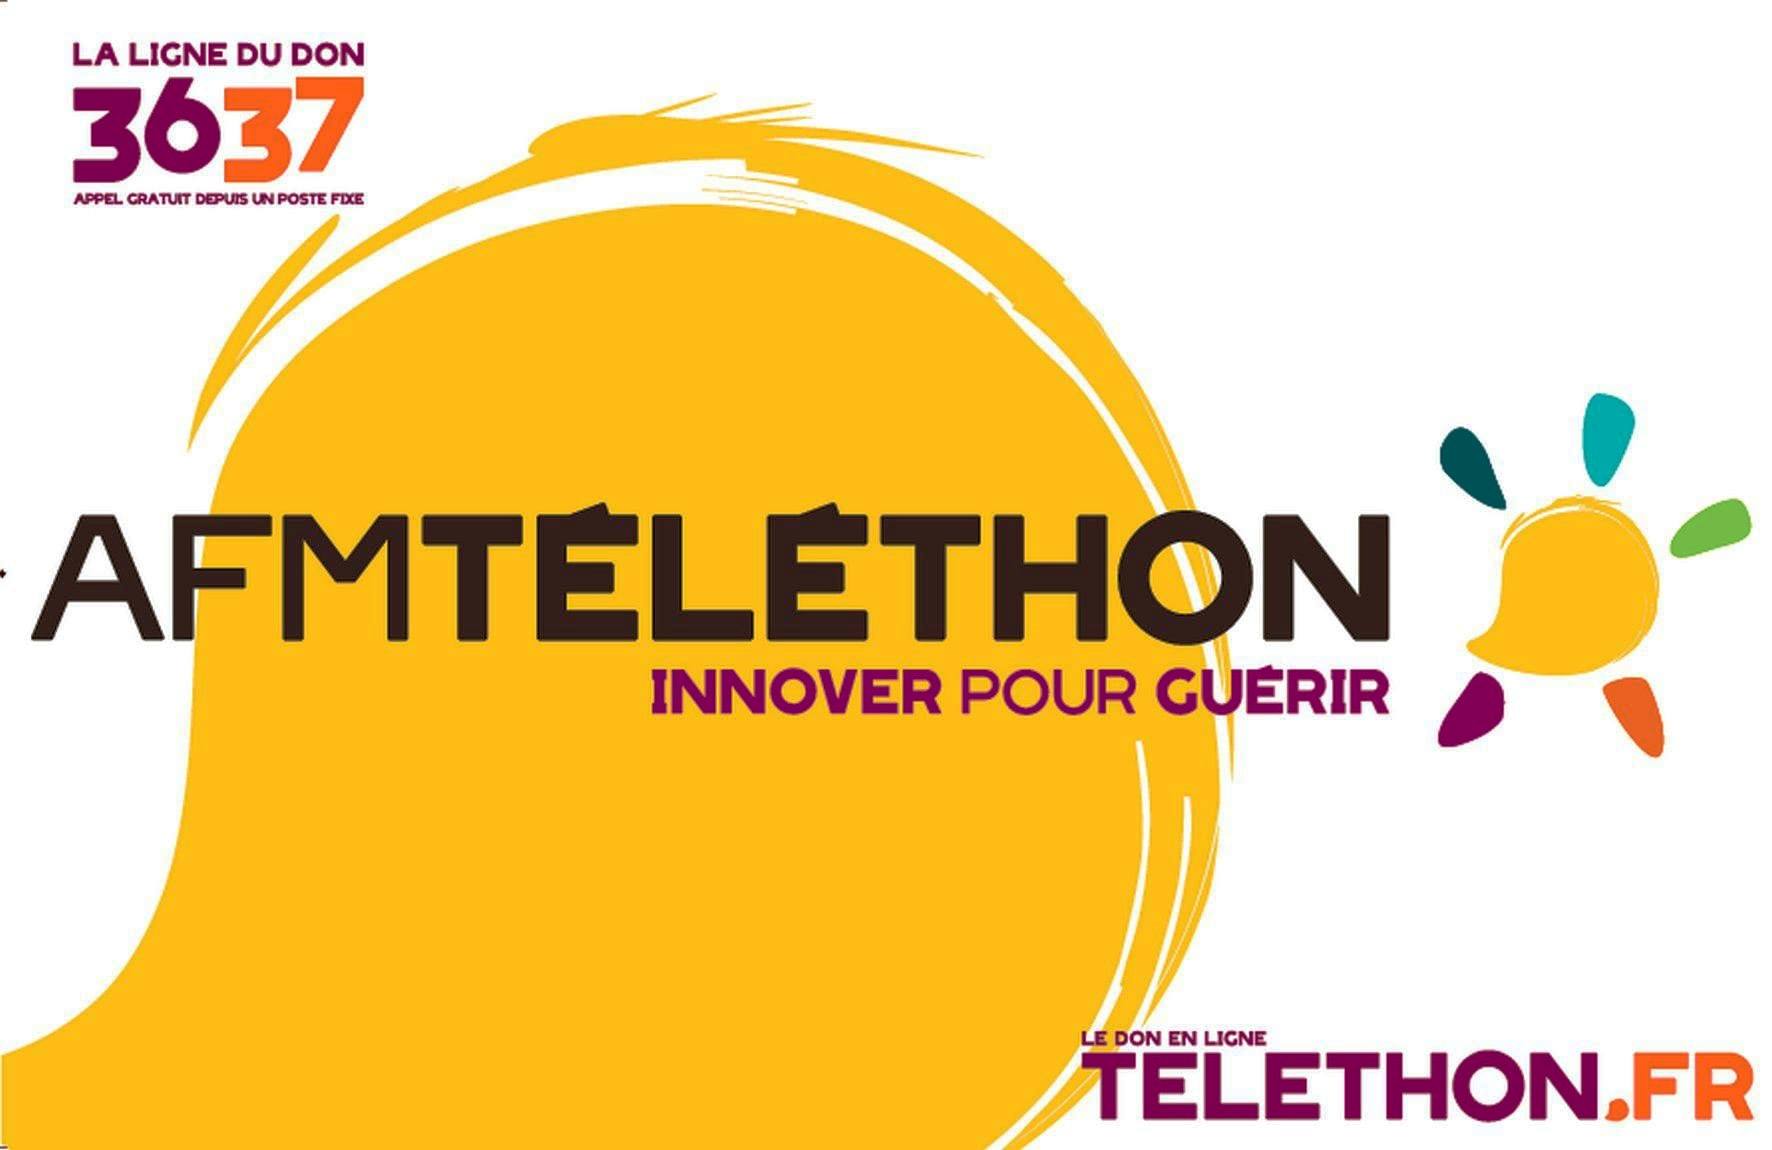 Alle leuke evenementen! : Téléthon : randonnée VTT-VTTAE ouverte à tous